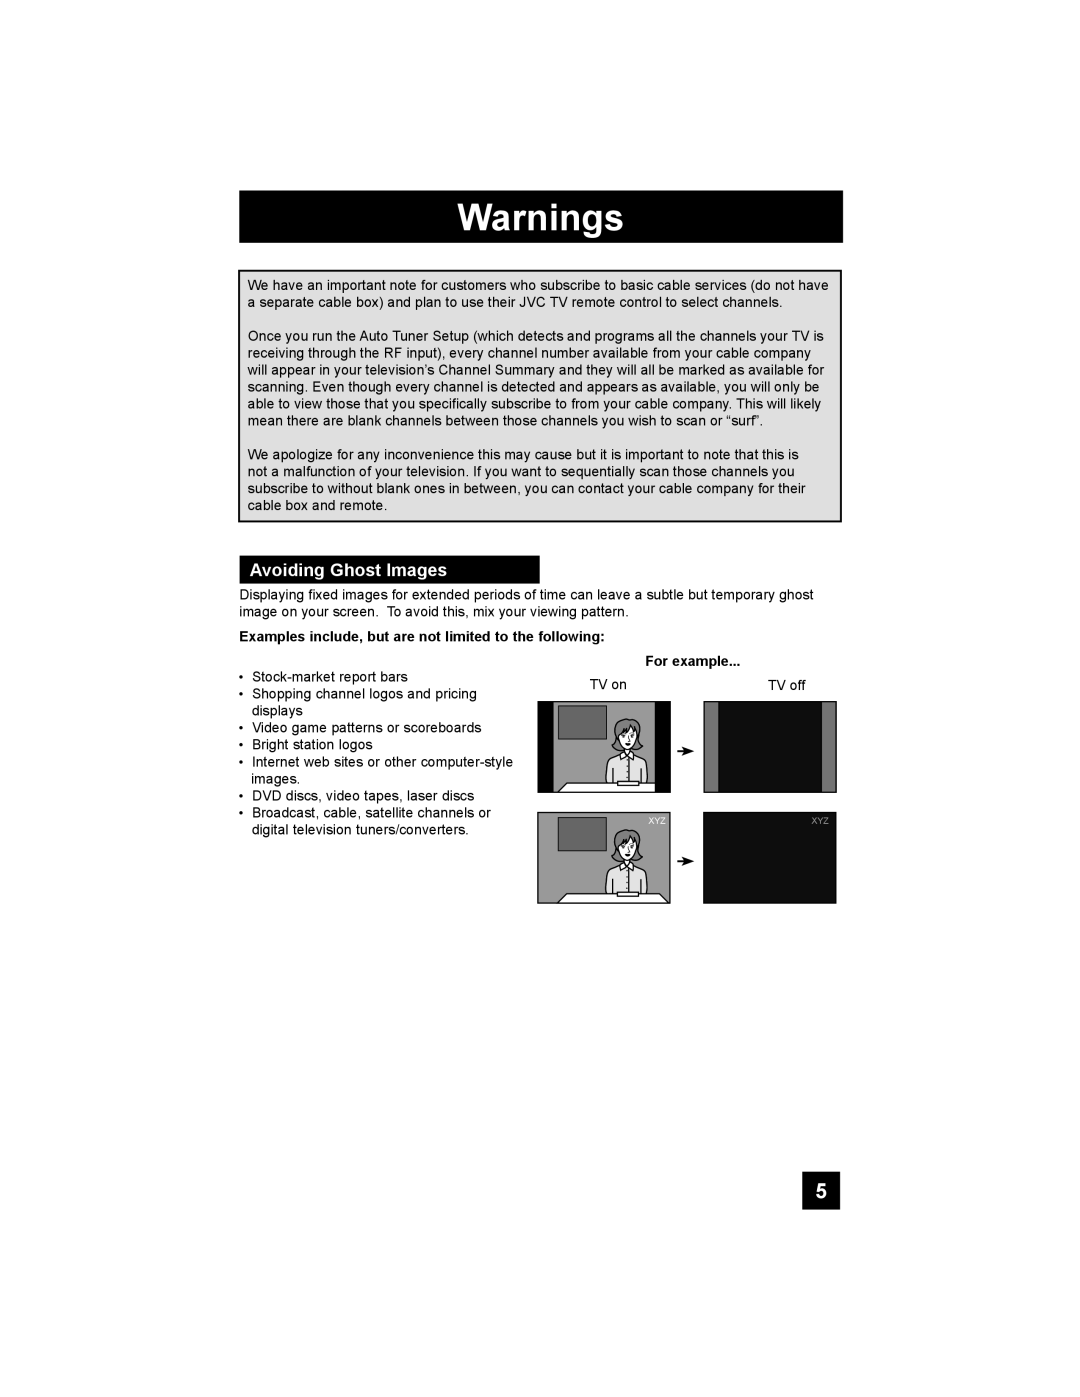 JVC LT-32EX38, LT-42EX38, LT-37EX38 manual Warnings, Avoiding Ghost Images 